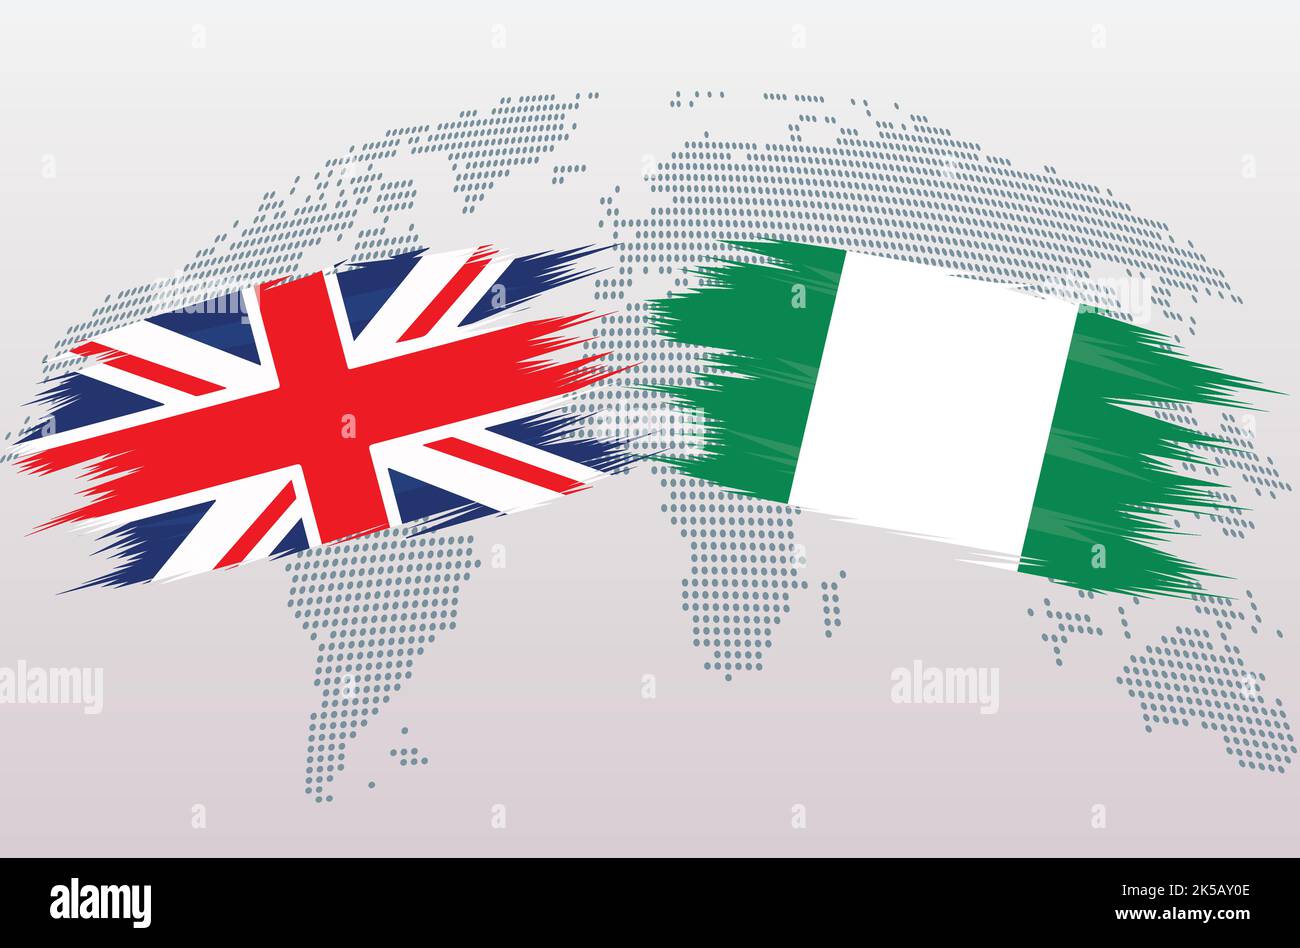 Bandiere britanniche e nigeriane. Bandiere Regno Unito vs Nigeria, isolate su sfondo grigio della mappa mondiale. Illustrazione vettoriale. Illustrazione Vettoriale